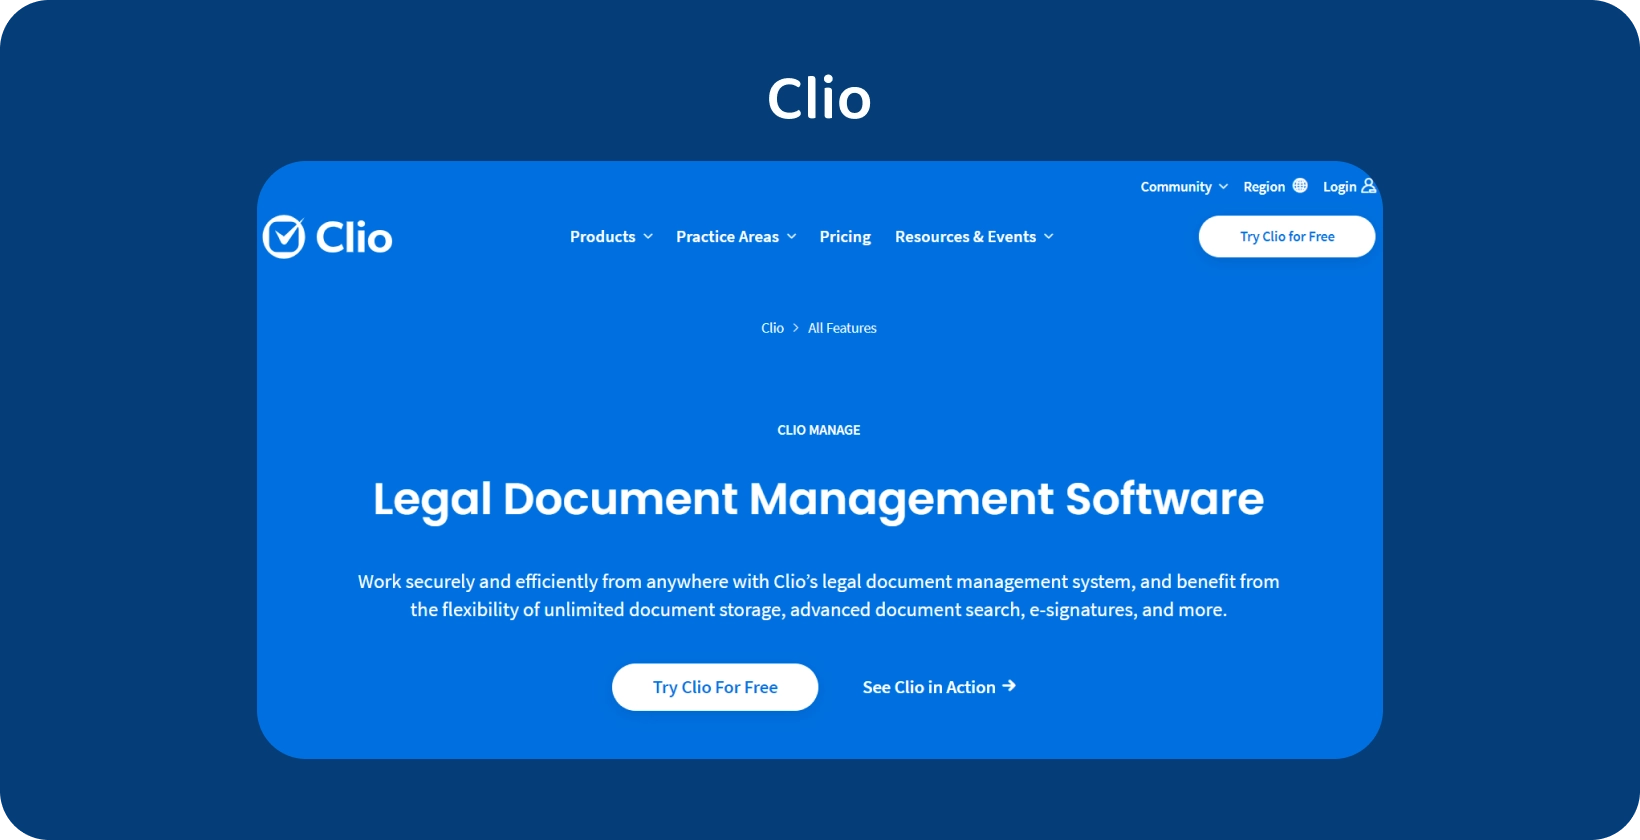 Clio's brugergrænseflade viser sin Legal Document Management Software, der optimerer organiseret posthåndtering.